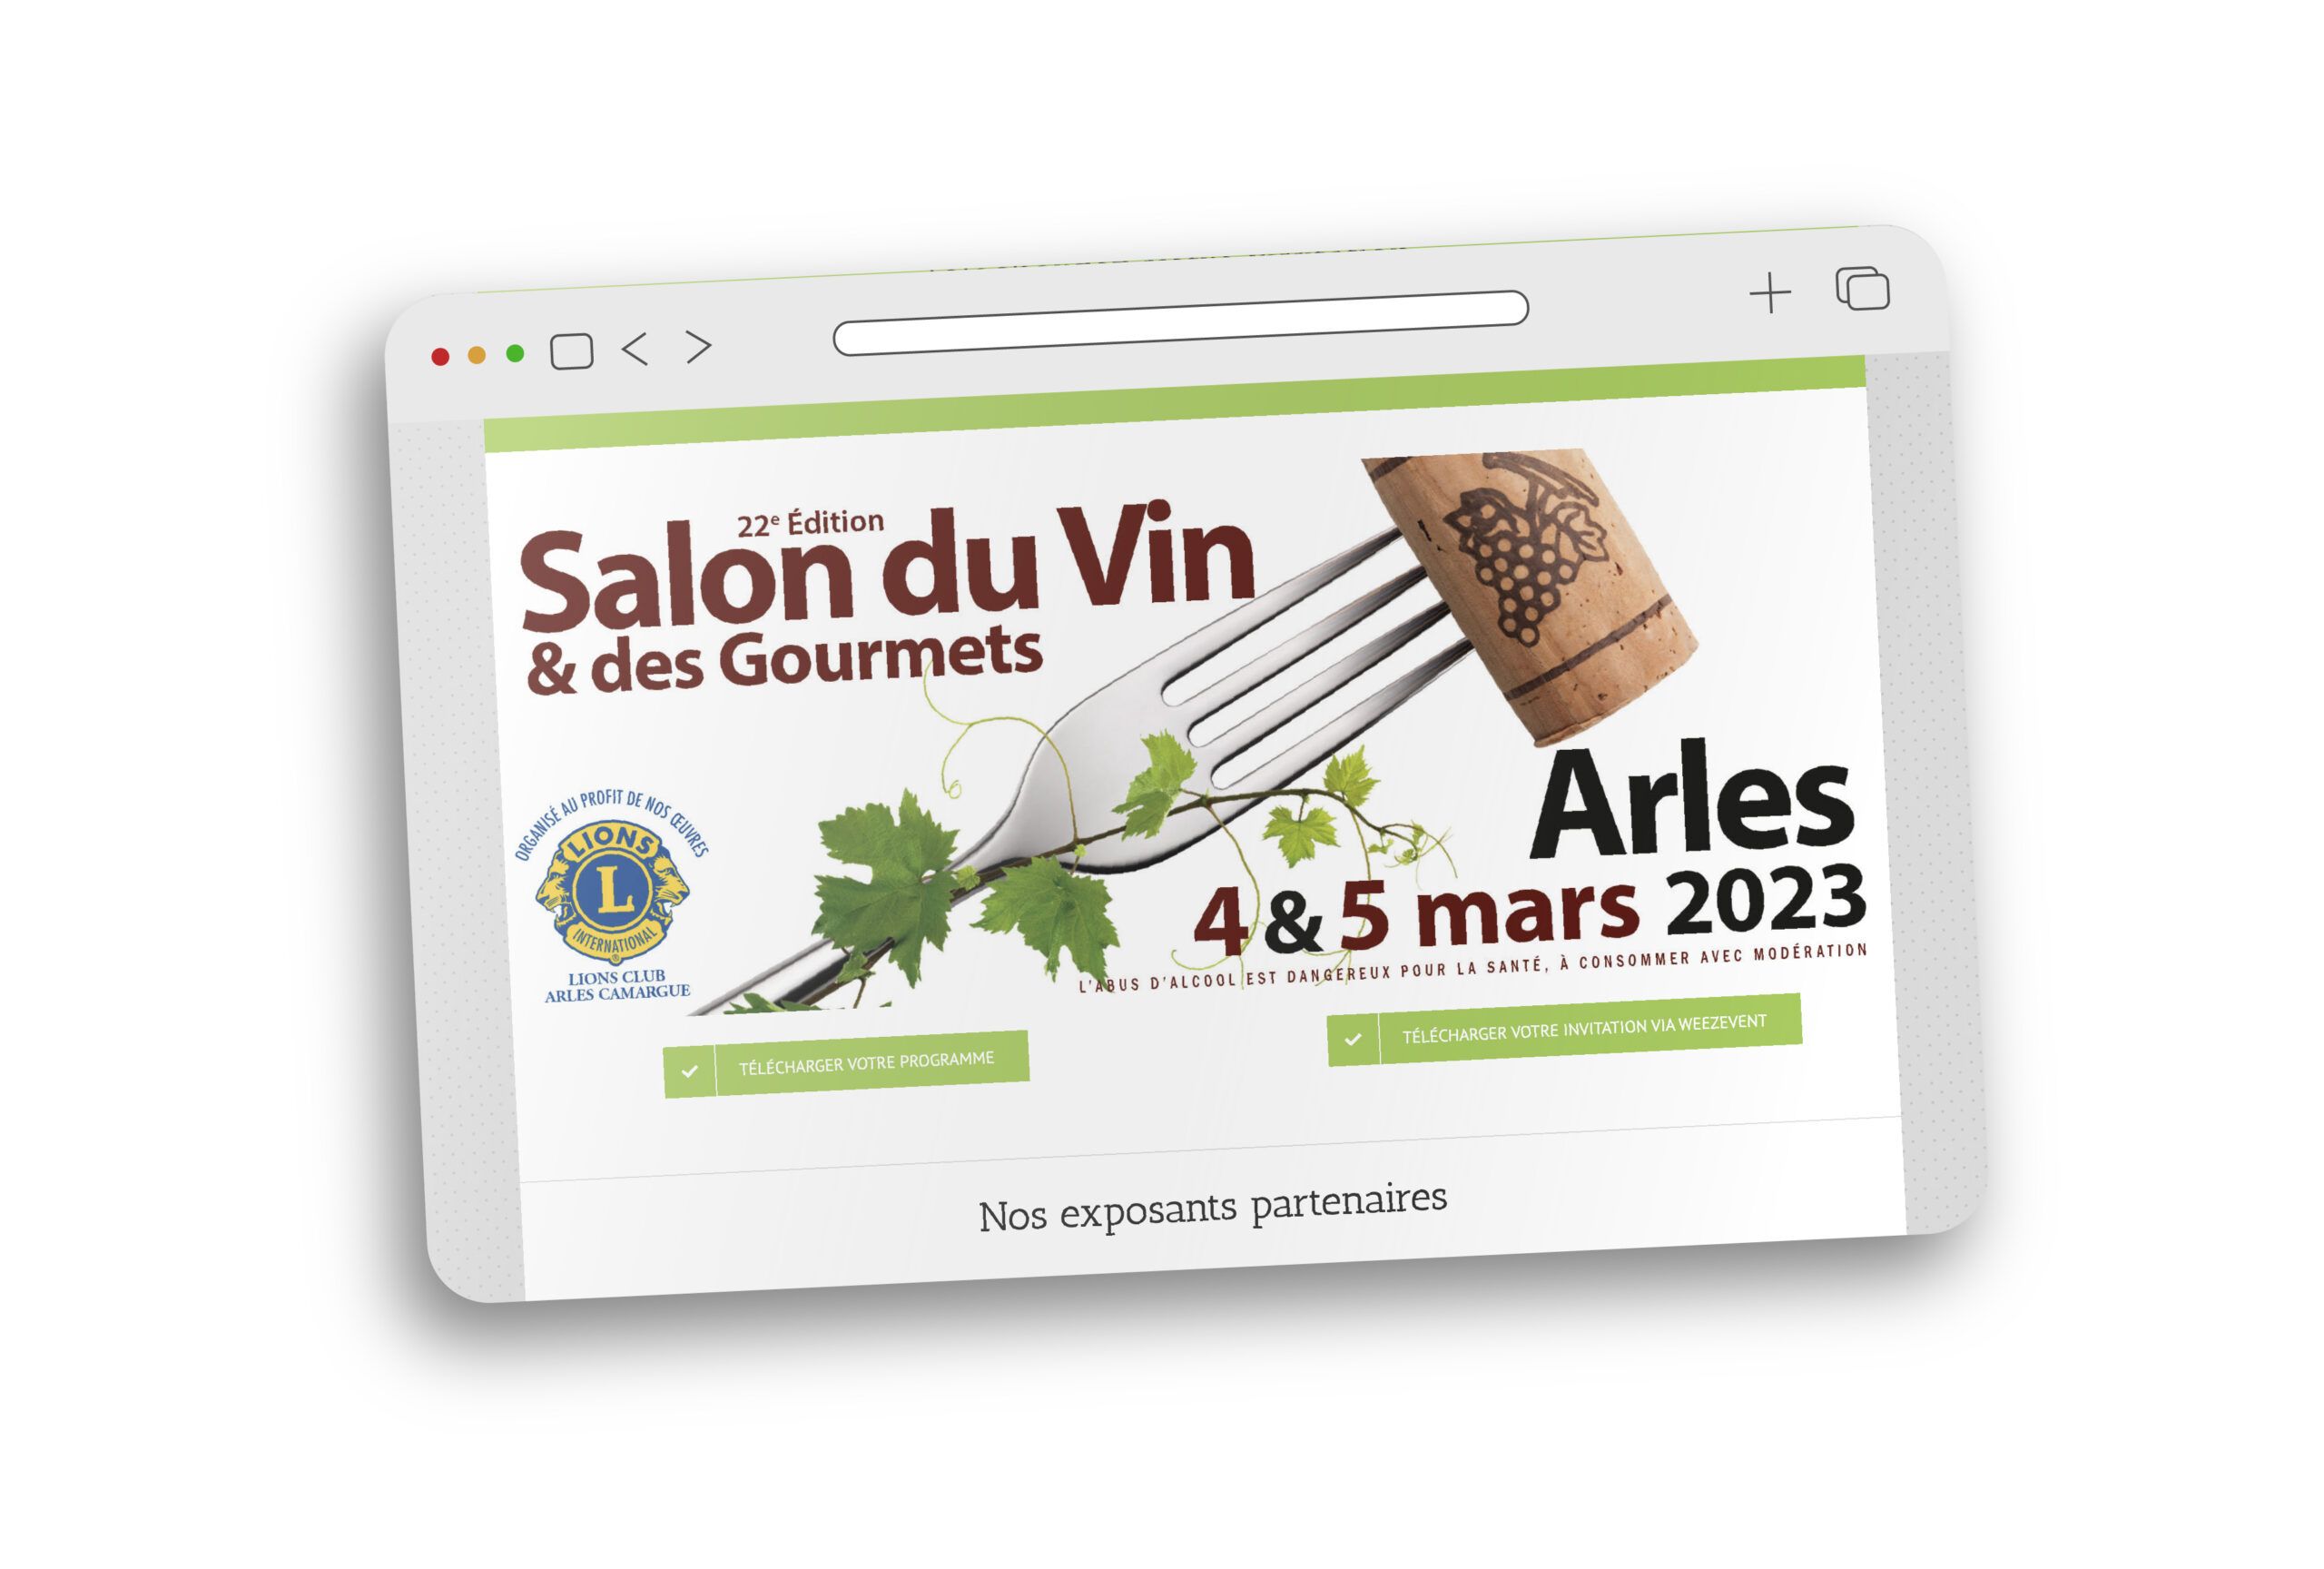 Le Salon du Vin – Lions Club Arles Camargue